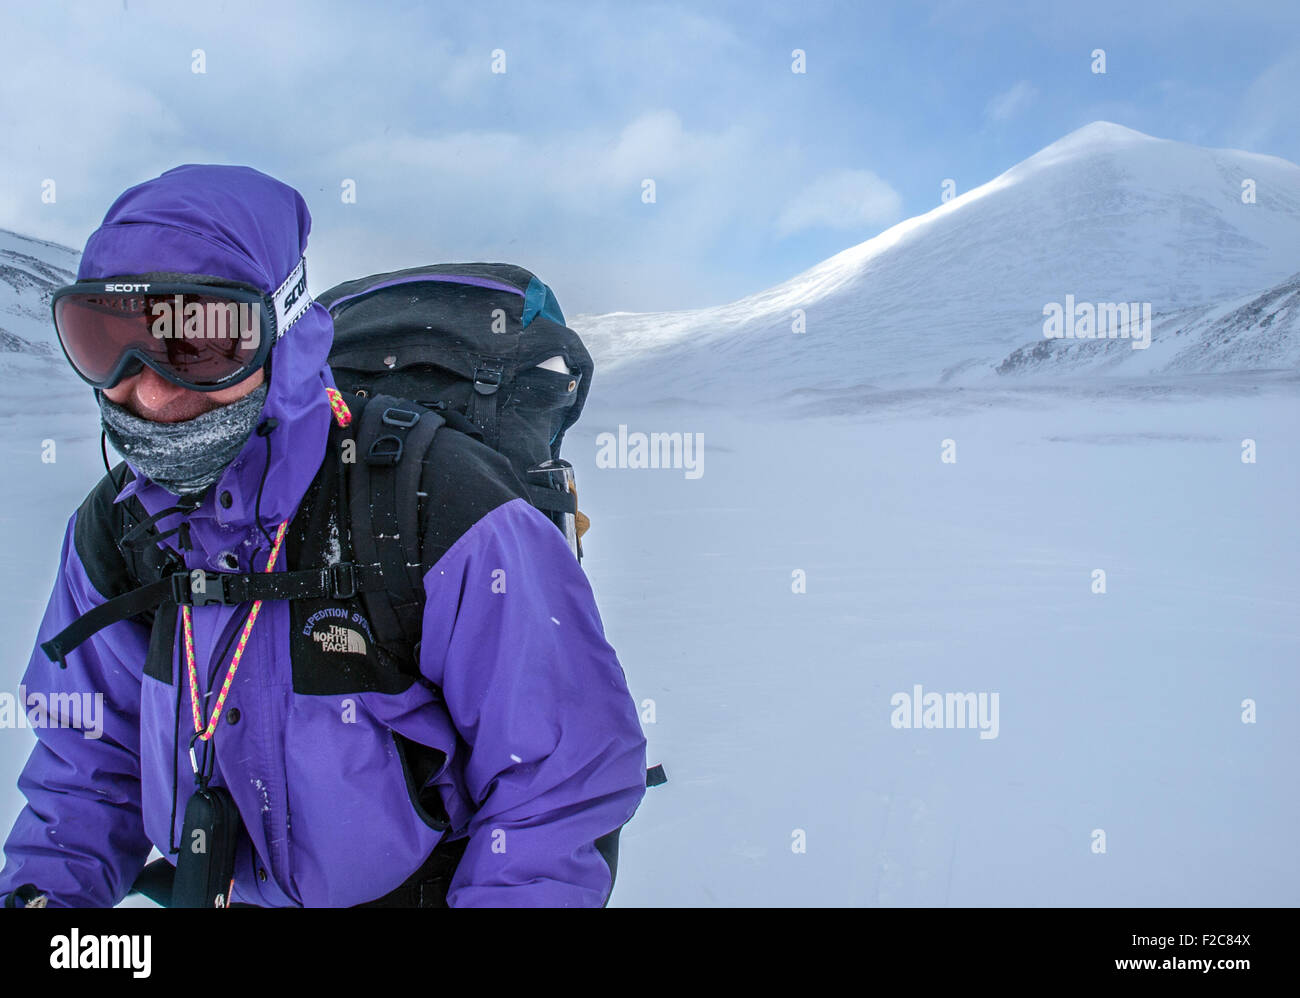 Ski-tourer con gafas en la Rondane, Noruega Foto de stock